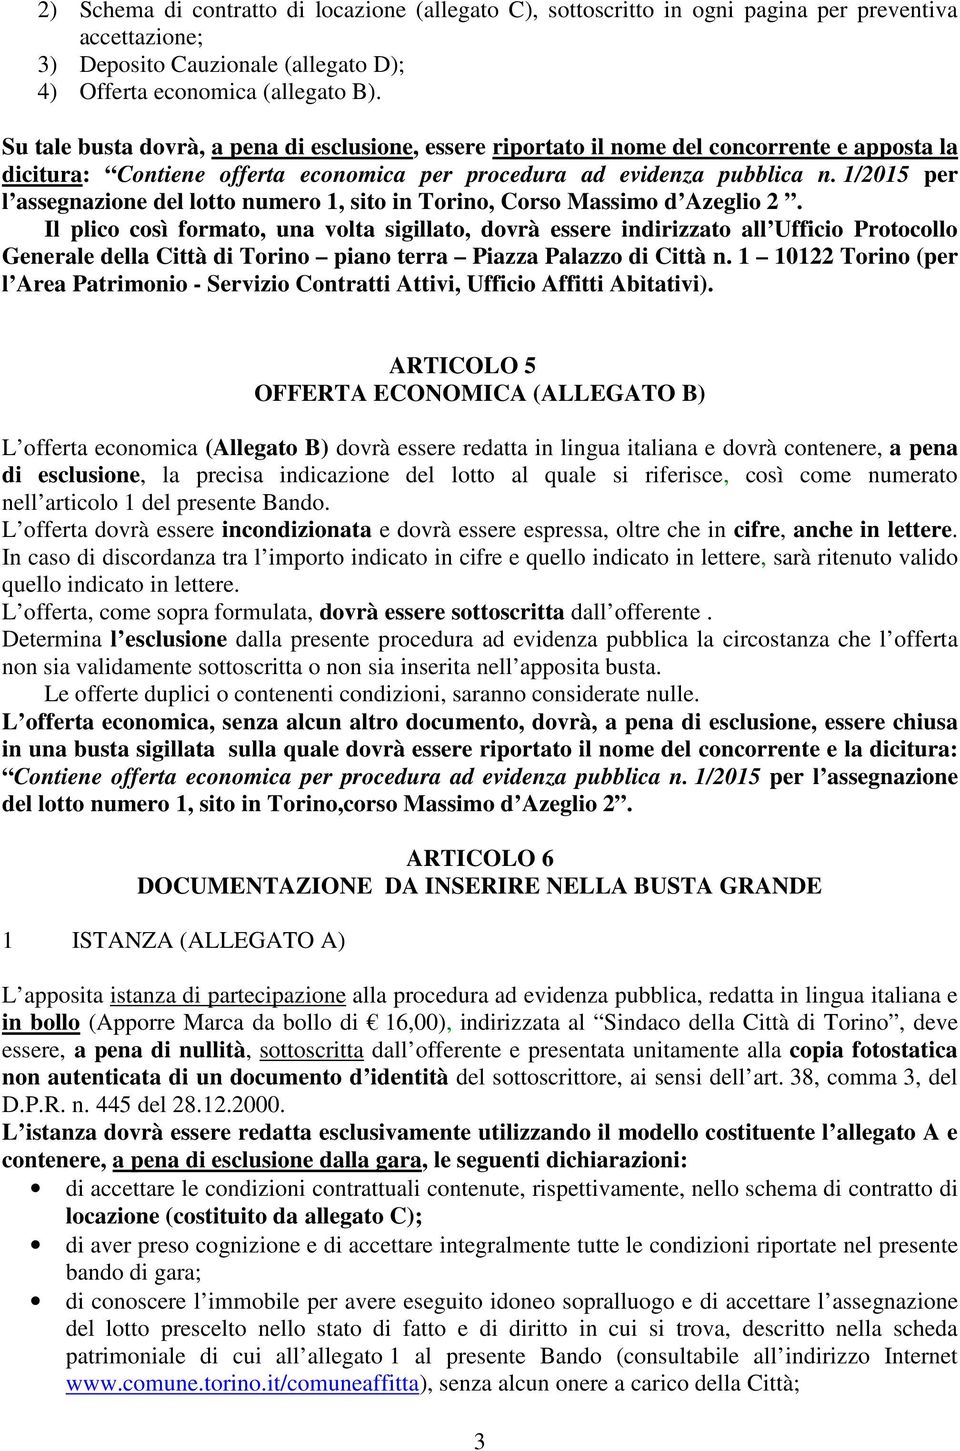 1/2015 per l assegnazione del lotto numero 1, sito in Torino, Corso Massimo d Azeglio 2.